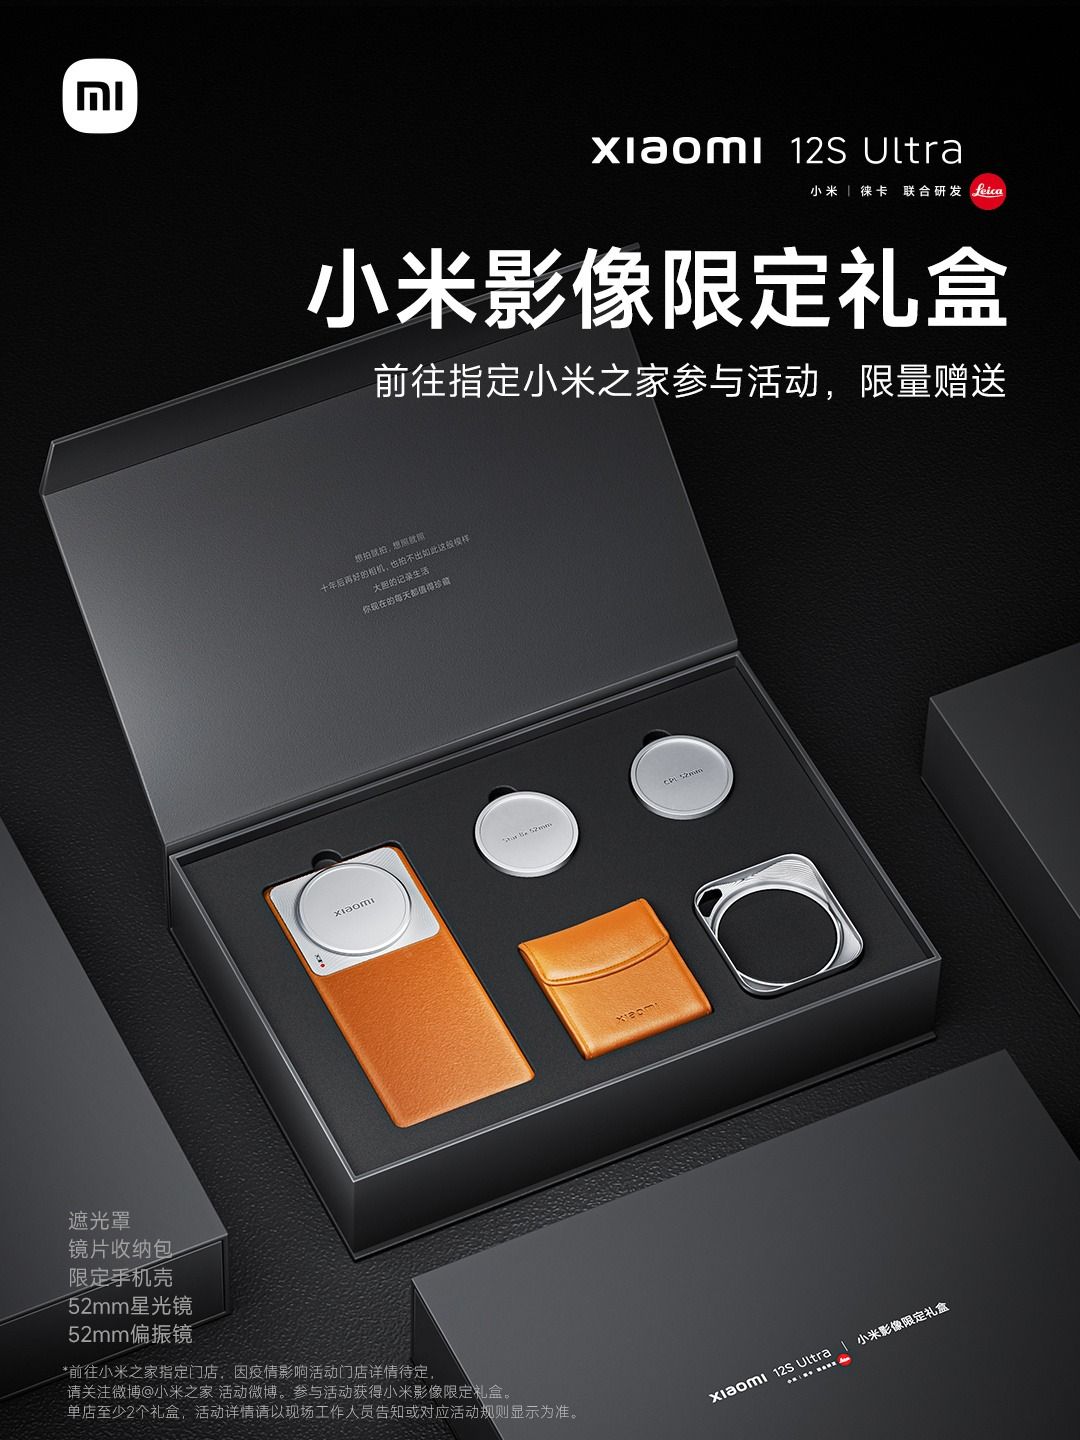 ครบเซ็ต! Xiaomi 12S Ultra กล่องรวมเลนส์กล้องติดมือถือ พร้อมสุ่มแจกให้ผู้โชคดี แม้ไม่ได้วางขายจริง